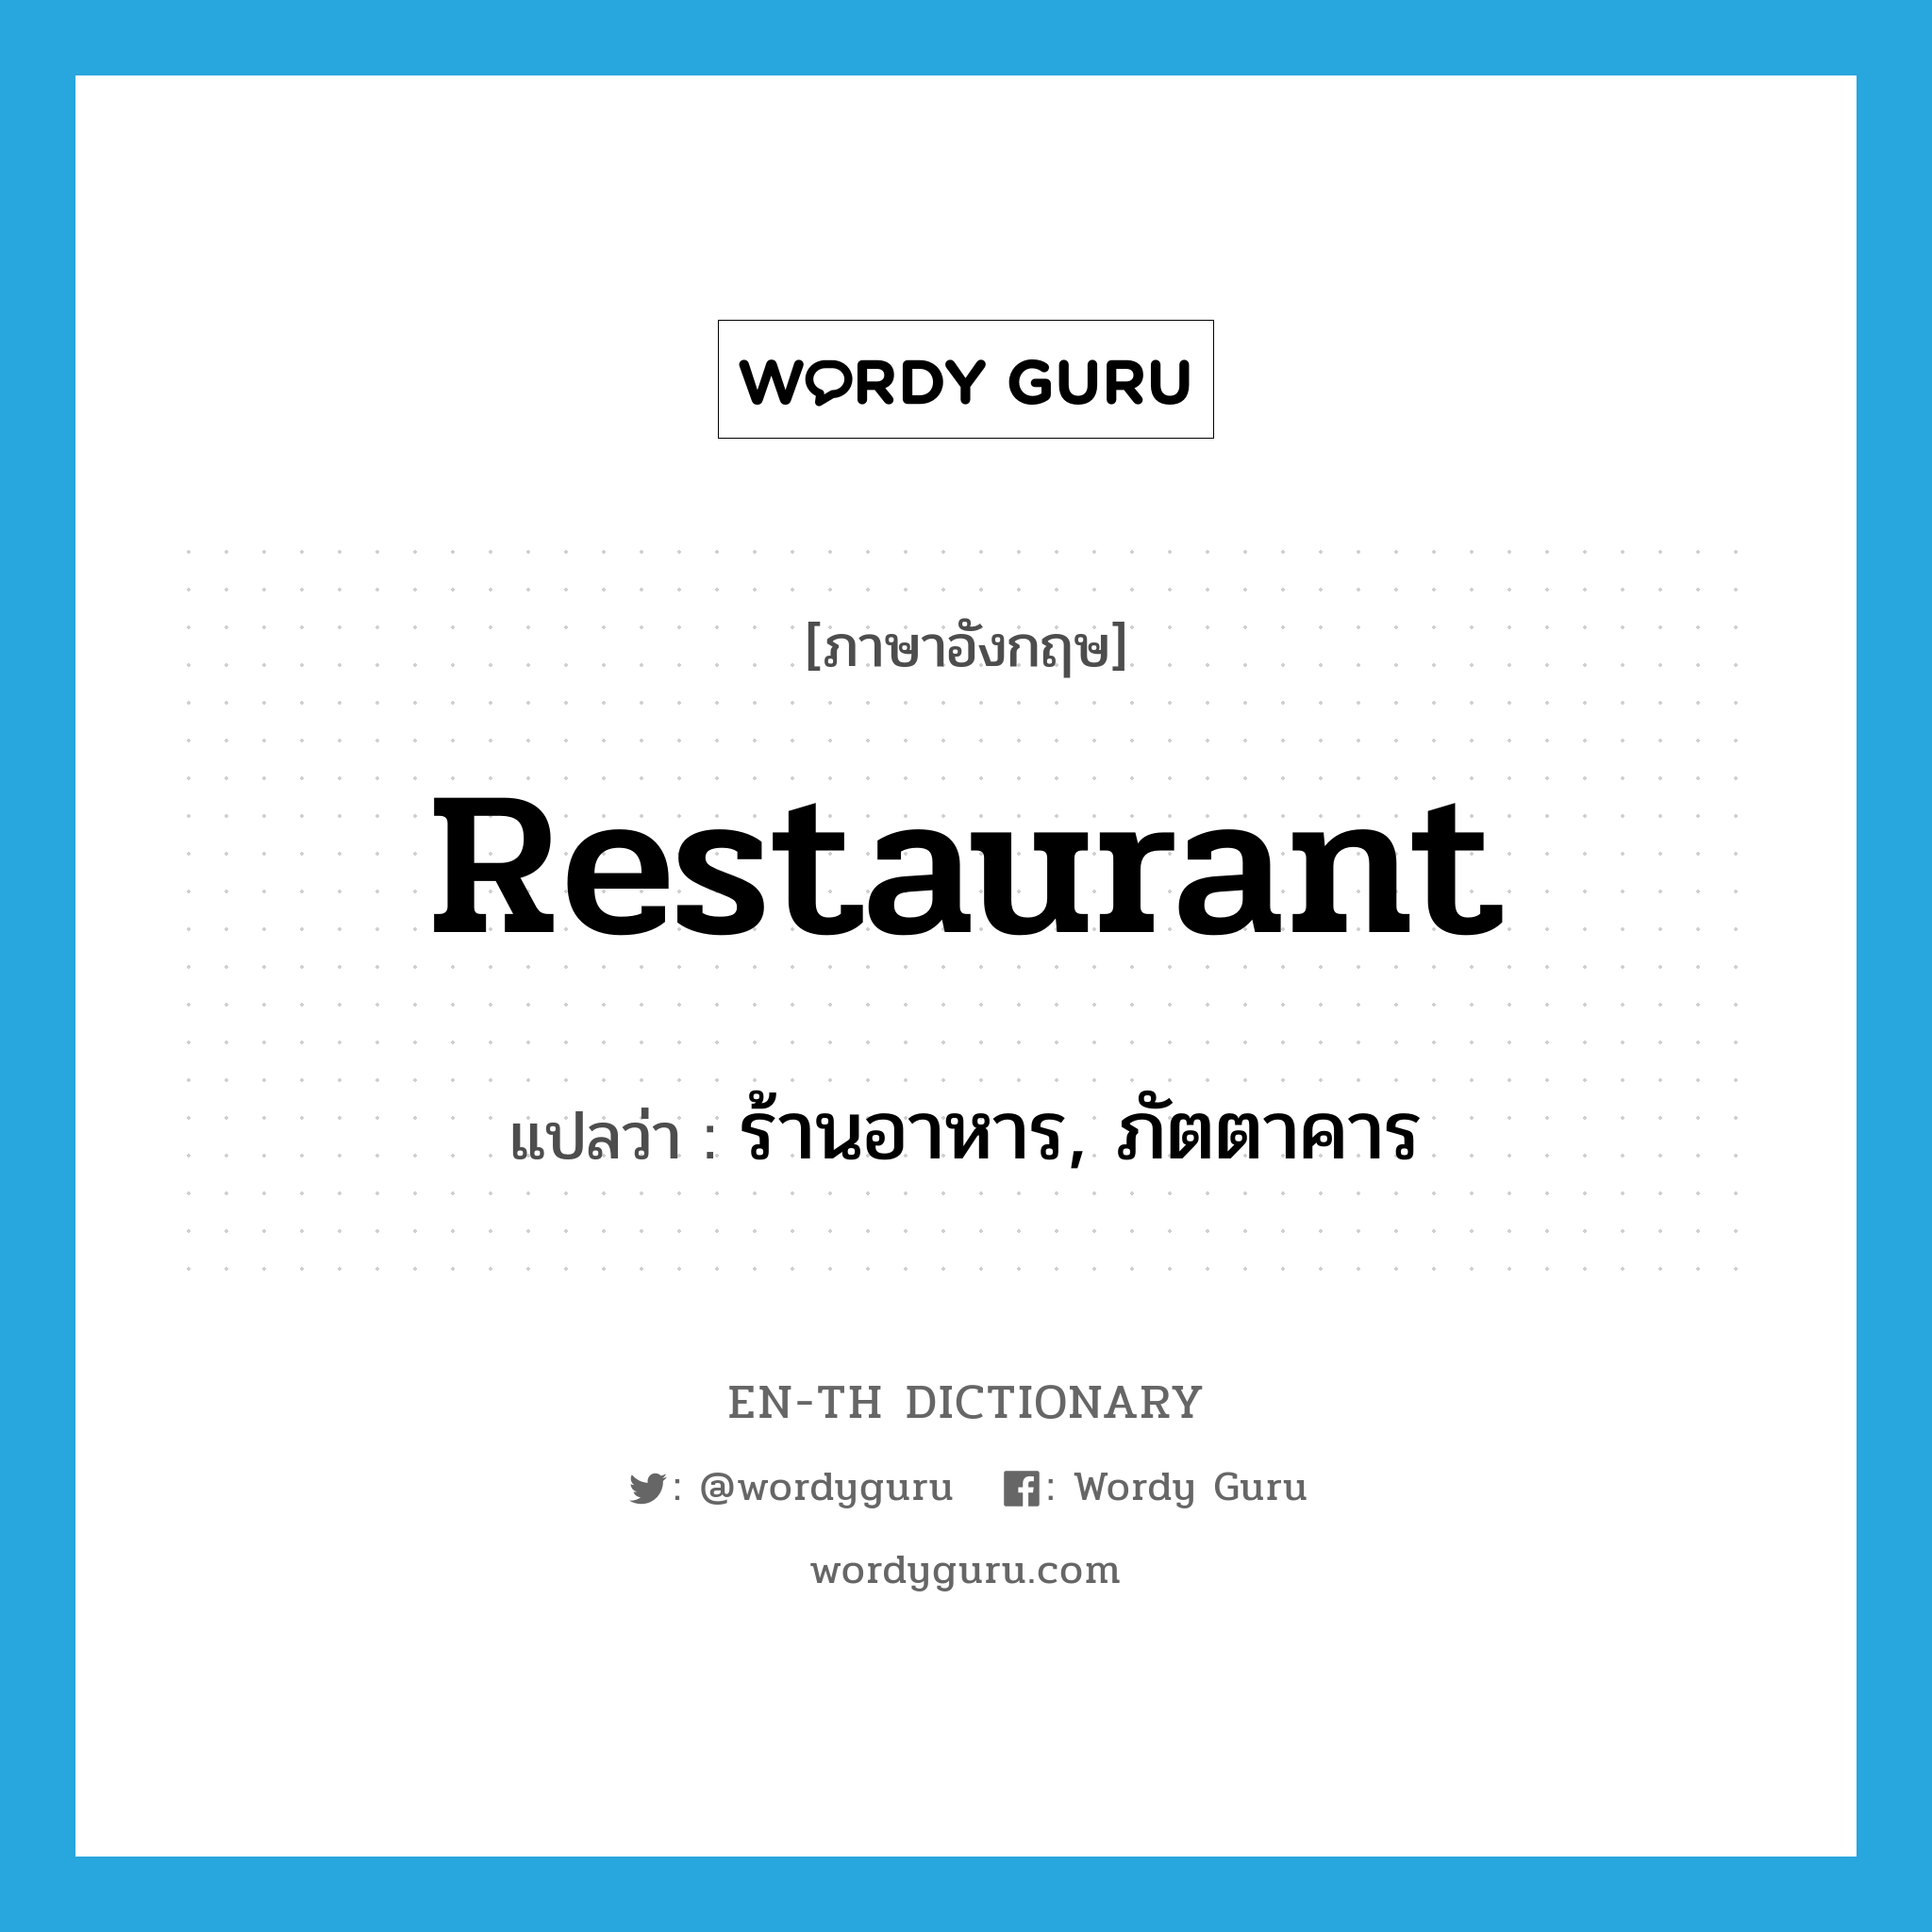 restaurant แปลว่า?, คำศัพท์ภาษาอังกฤษ restaurant แปลว่า ร้านอาหาร, ภัตตาคาร ประเภท N หมวด N